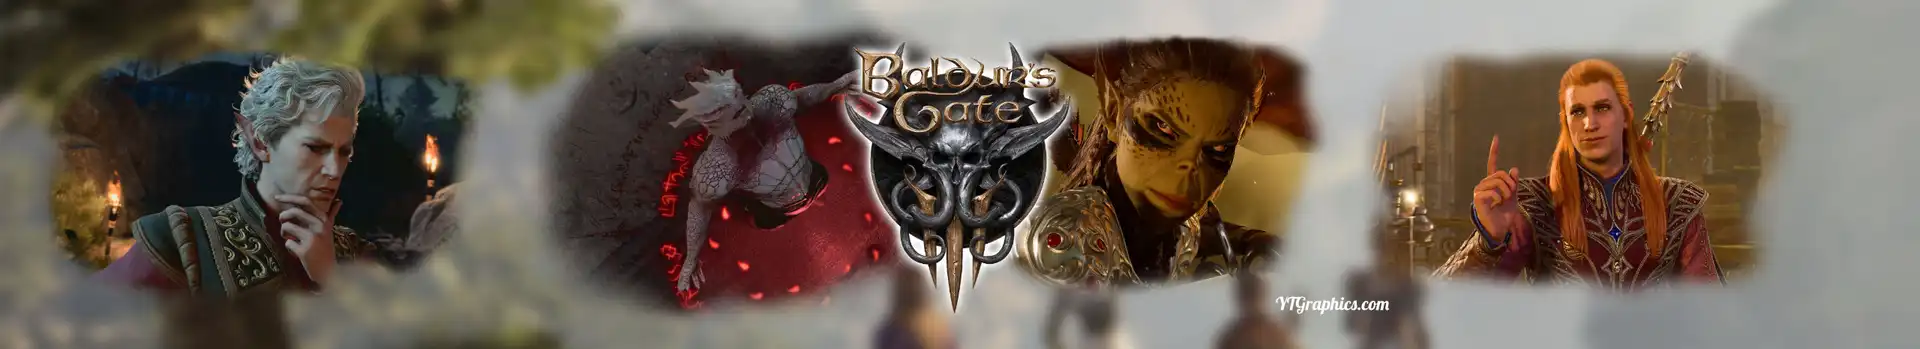 Baldur’s Gate 3 preview